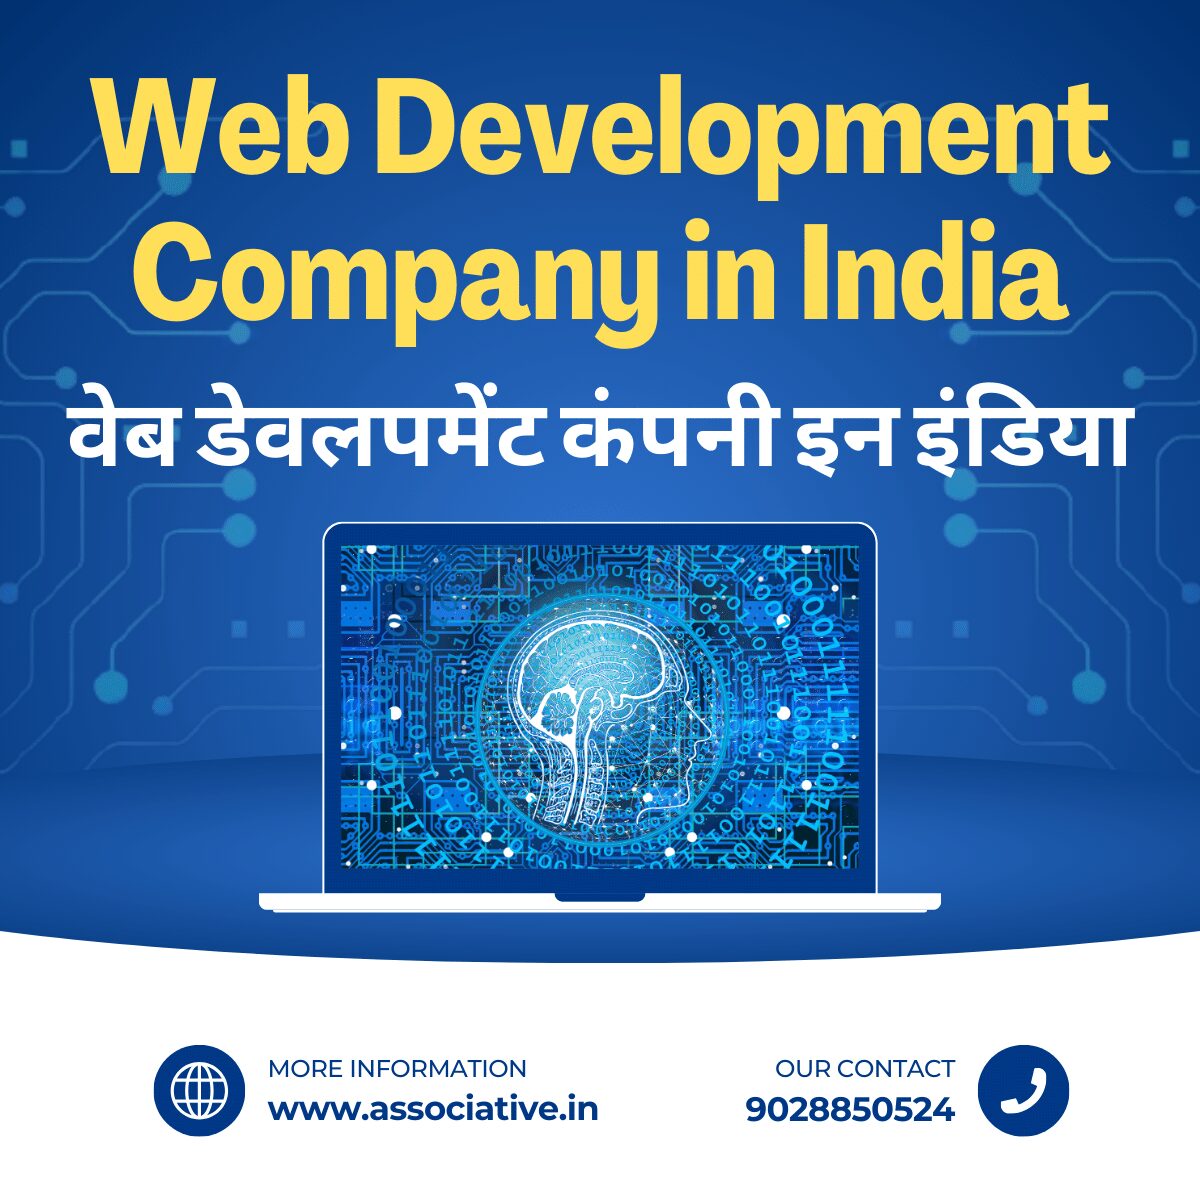 Web Development Company in India वेब डेवलपमेंट कंपनी इन इंडिया